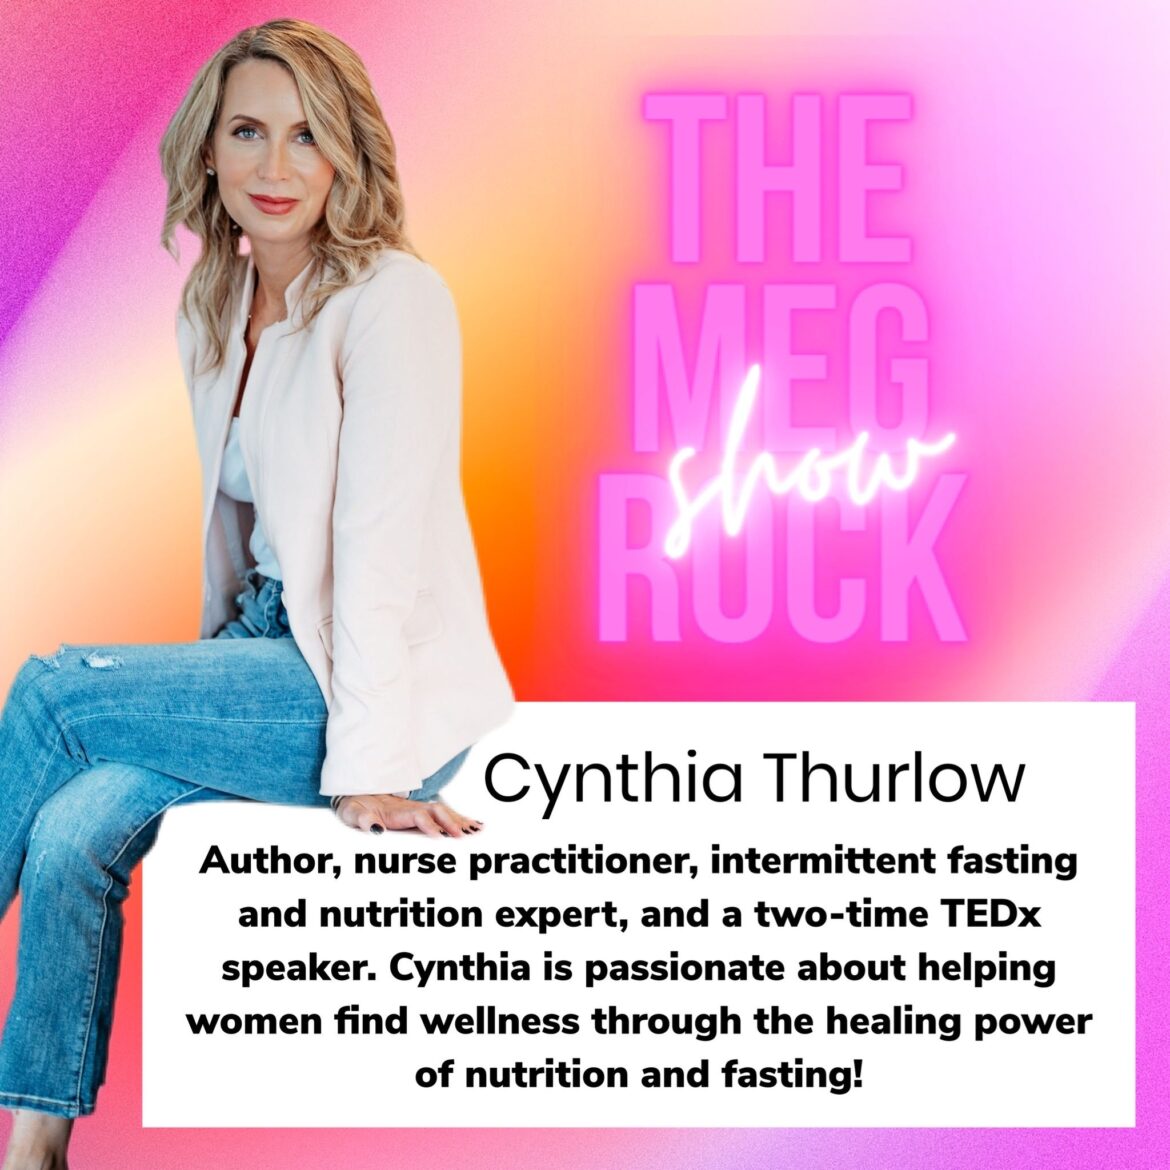 Cynthia Thurlow